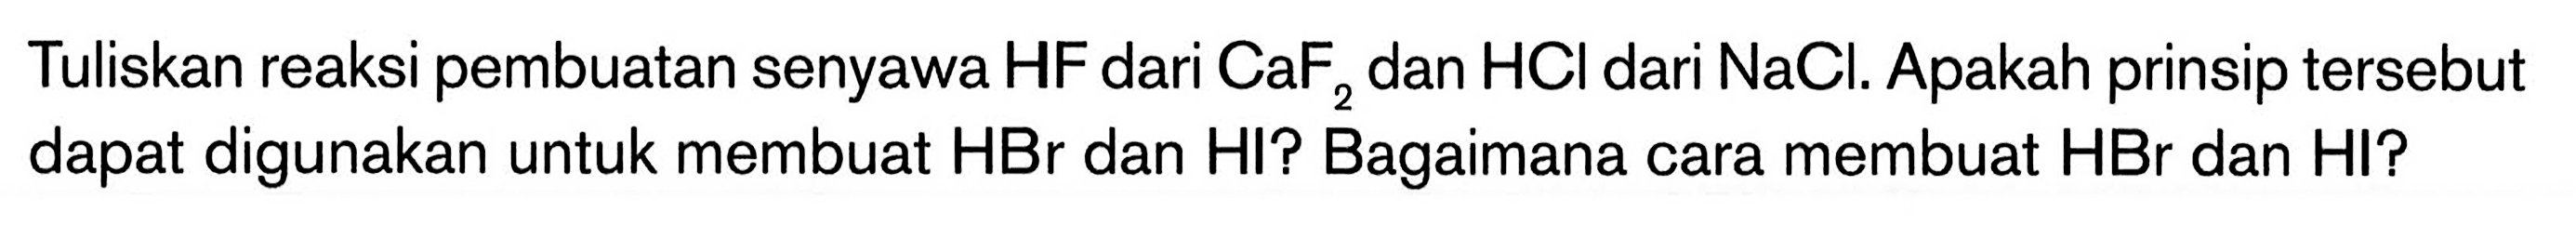 Tuliskan reaksi pembuatan senyawa HF dari CaF2 dan HCI dari NaCl. Apakah prinsip tersebut dapat digunakan untuk membuat HBr dan HI? Bagaimana cara membuat HBr dan HI?